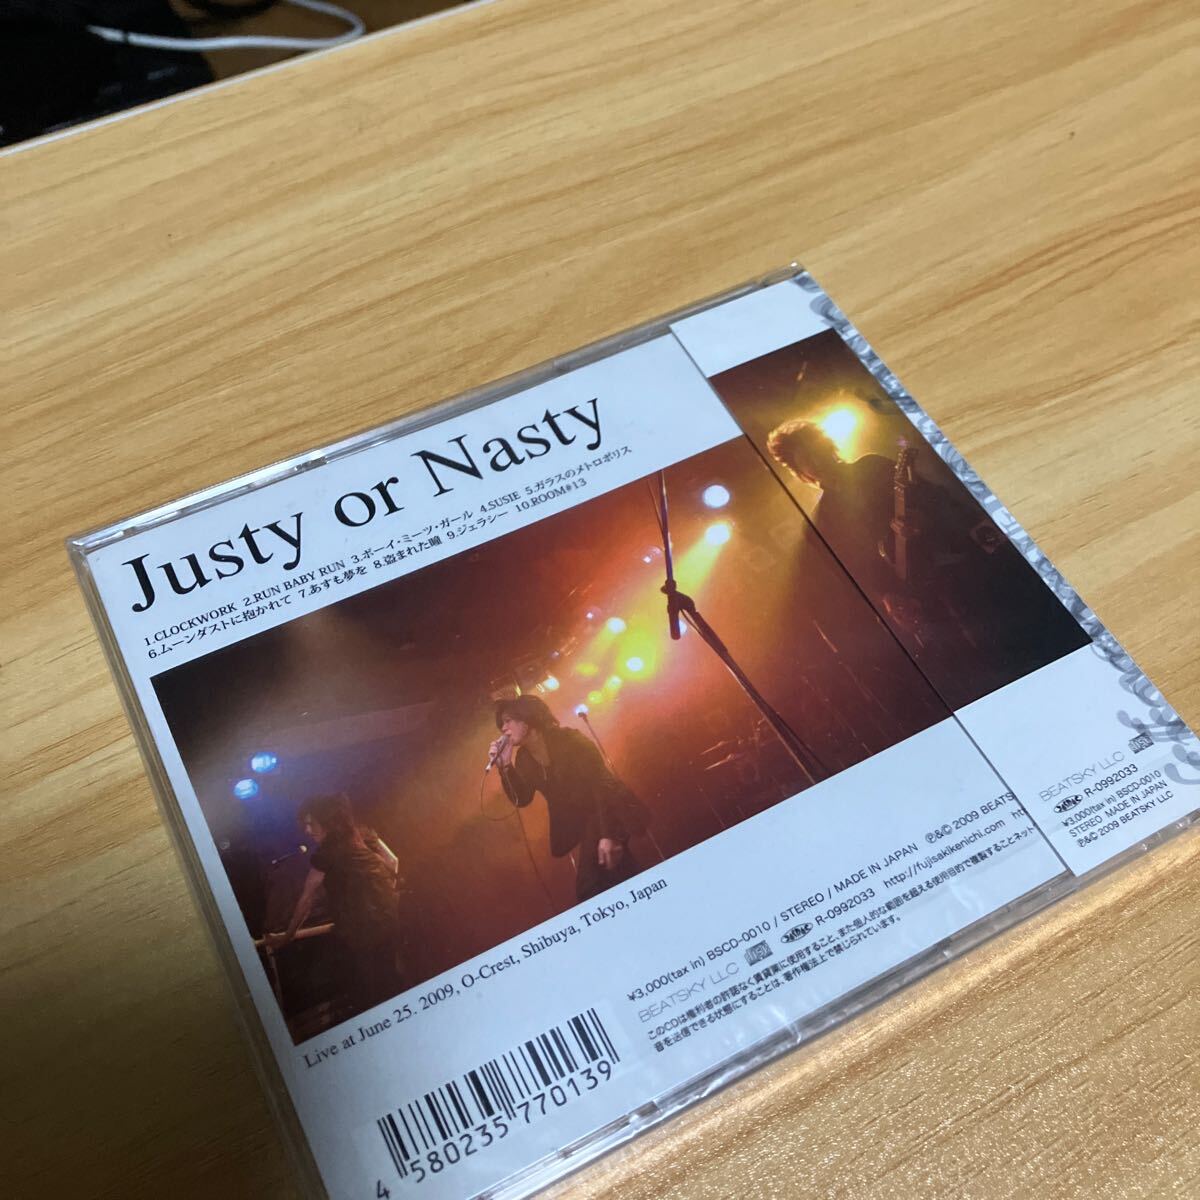 【未開封】justy-nasty craze 藤崎賢一 justy or nasty ライヴ ヴィジュアル系 v系 CD の画像2